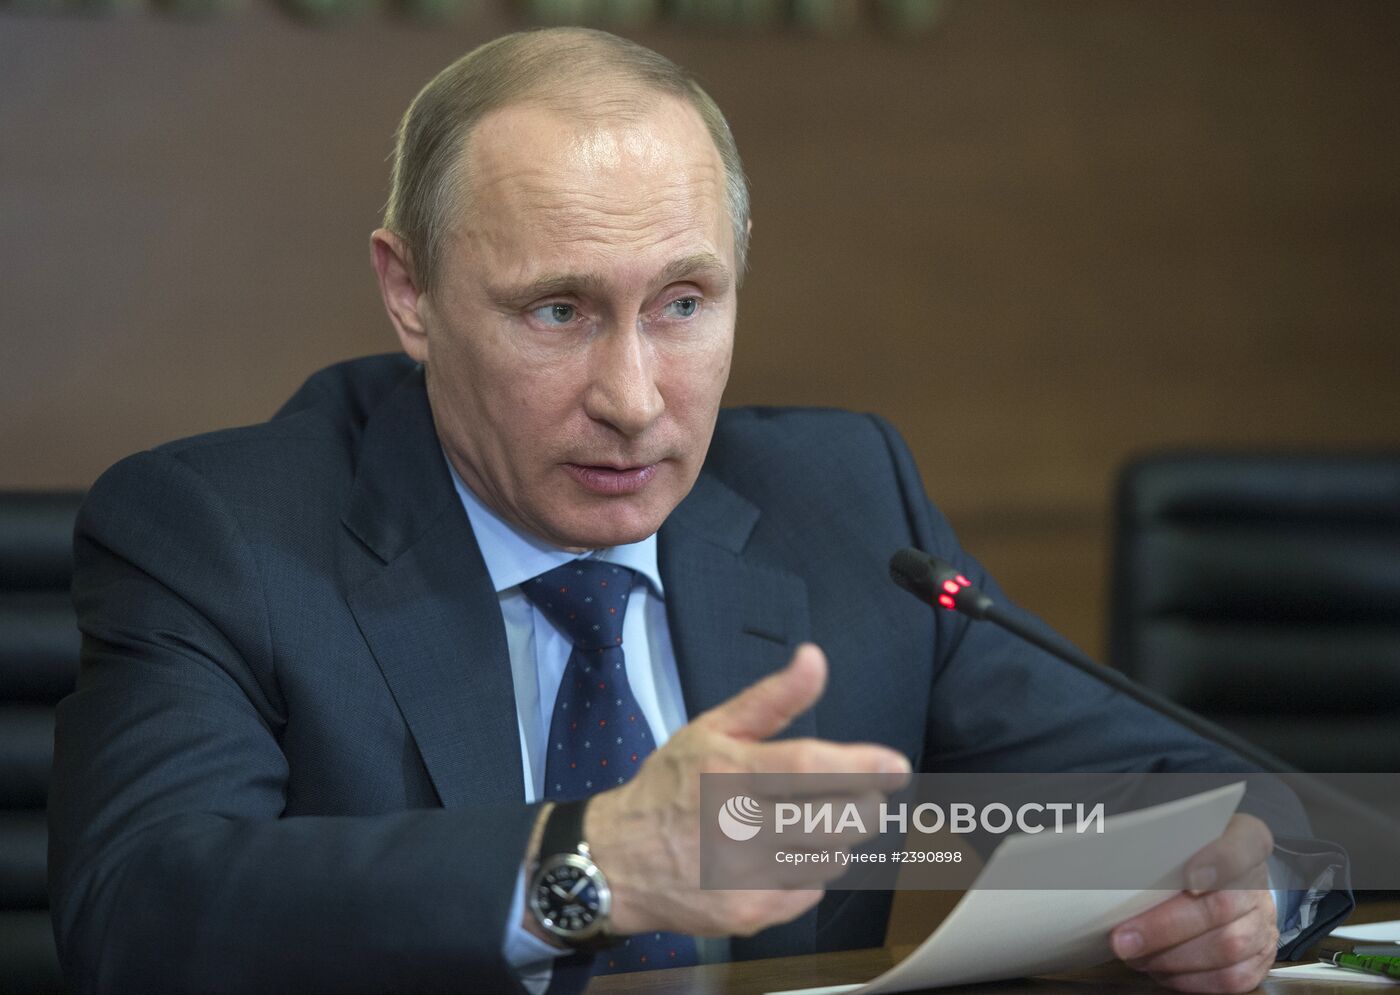 В.Путин провел совещание по вопросам противодействия незаконным финансовым операциям